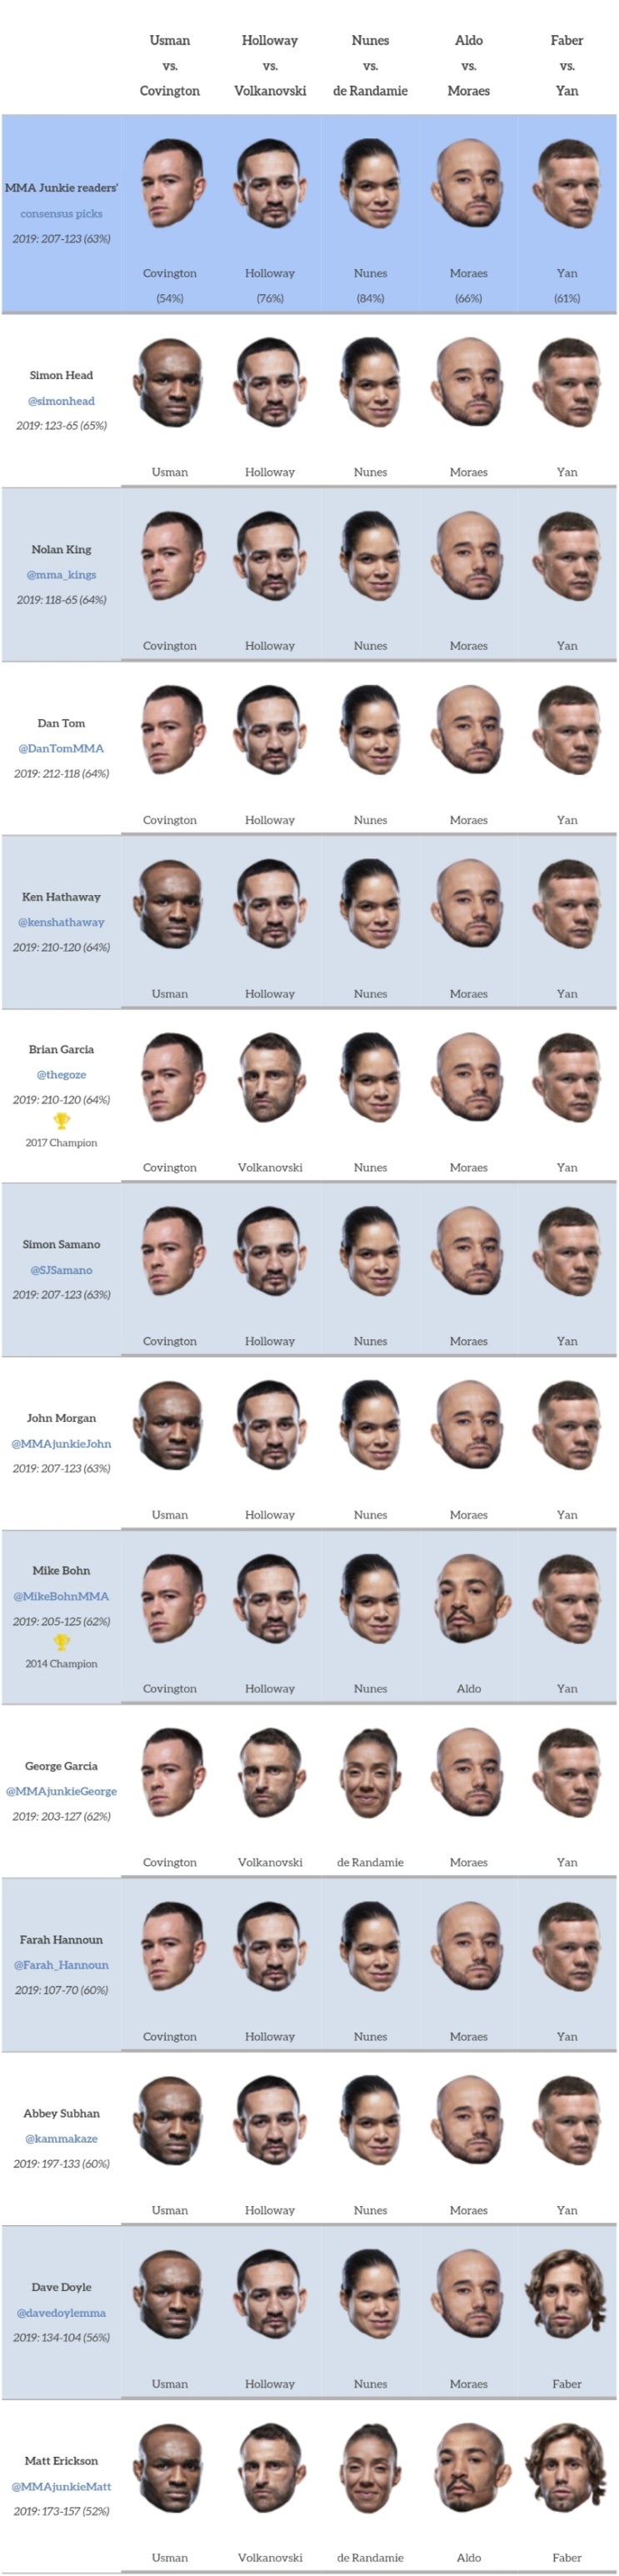 UFC 245 : 우스만 vs 코빙턴 미디어 예상 및 배당률